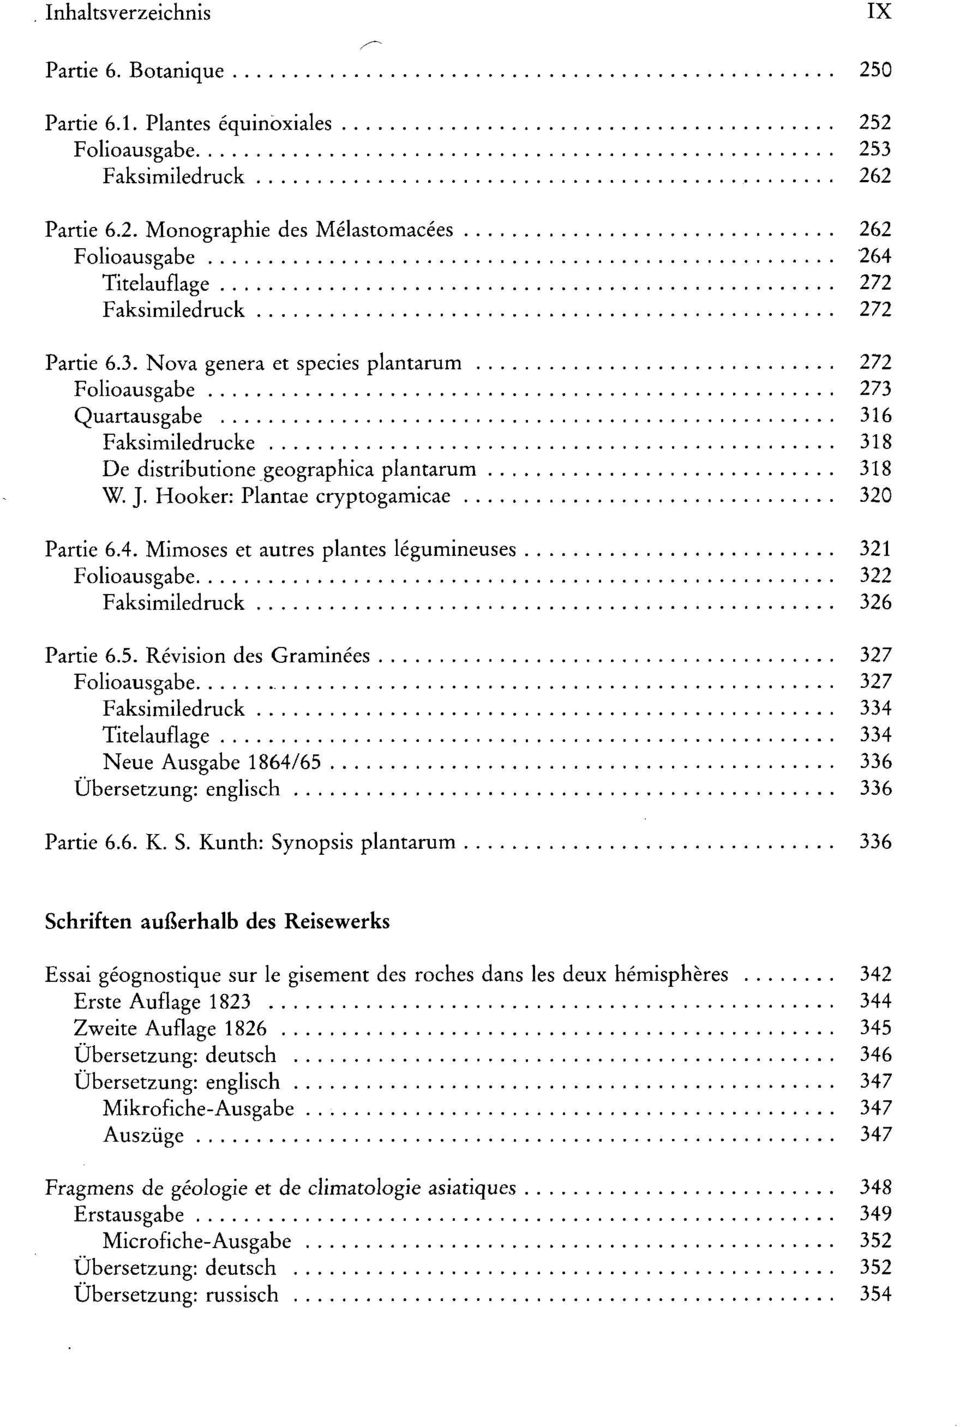 Mimoses et autres plantes legumineuses 321 Folioausgabe 322 Faksimiledruck 326 Partie 6.5.